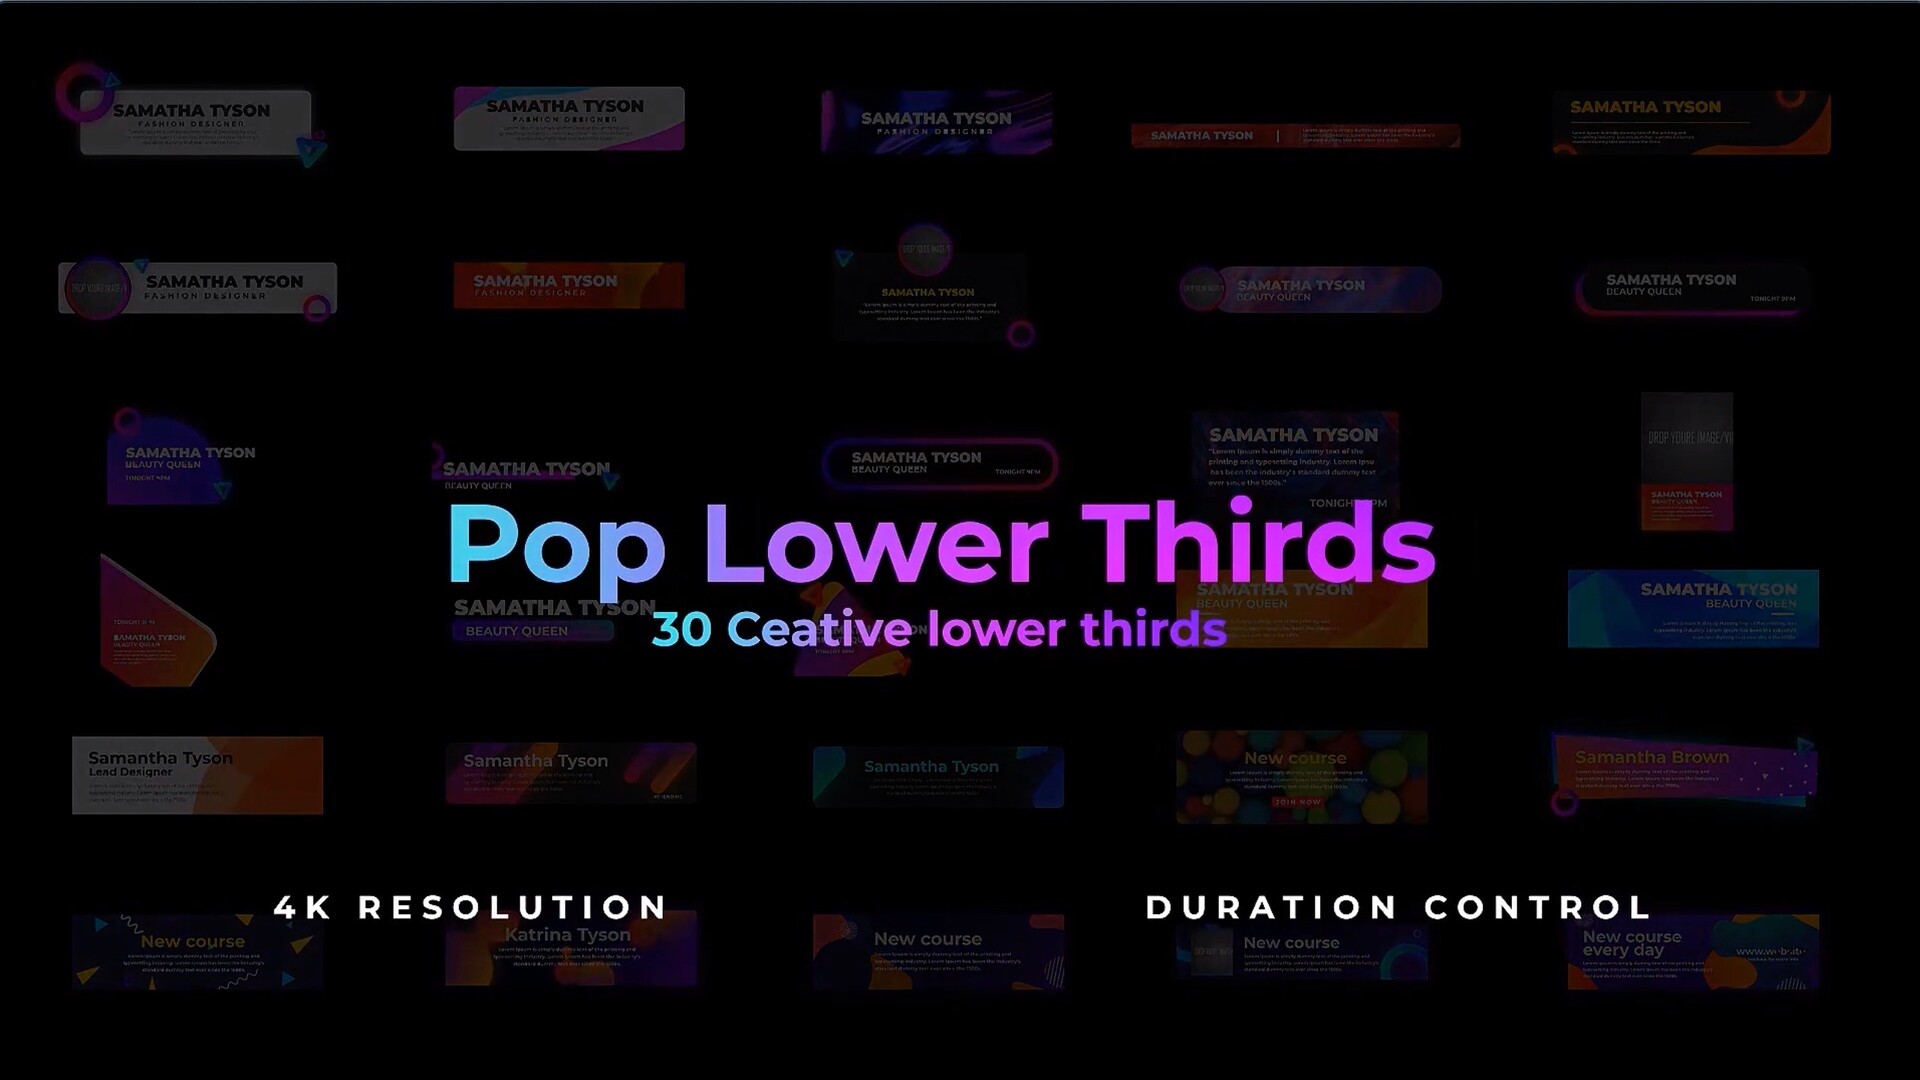 fcpx插件:30种流行底栏背景小框字幕条标题动画 Pop Lower thirds